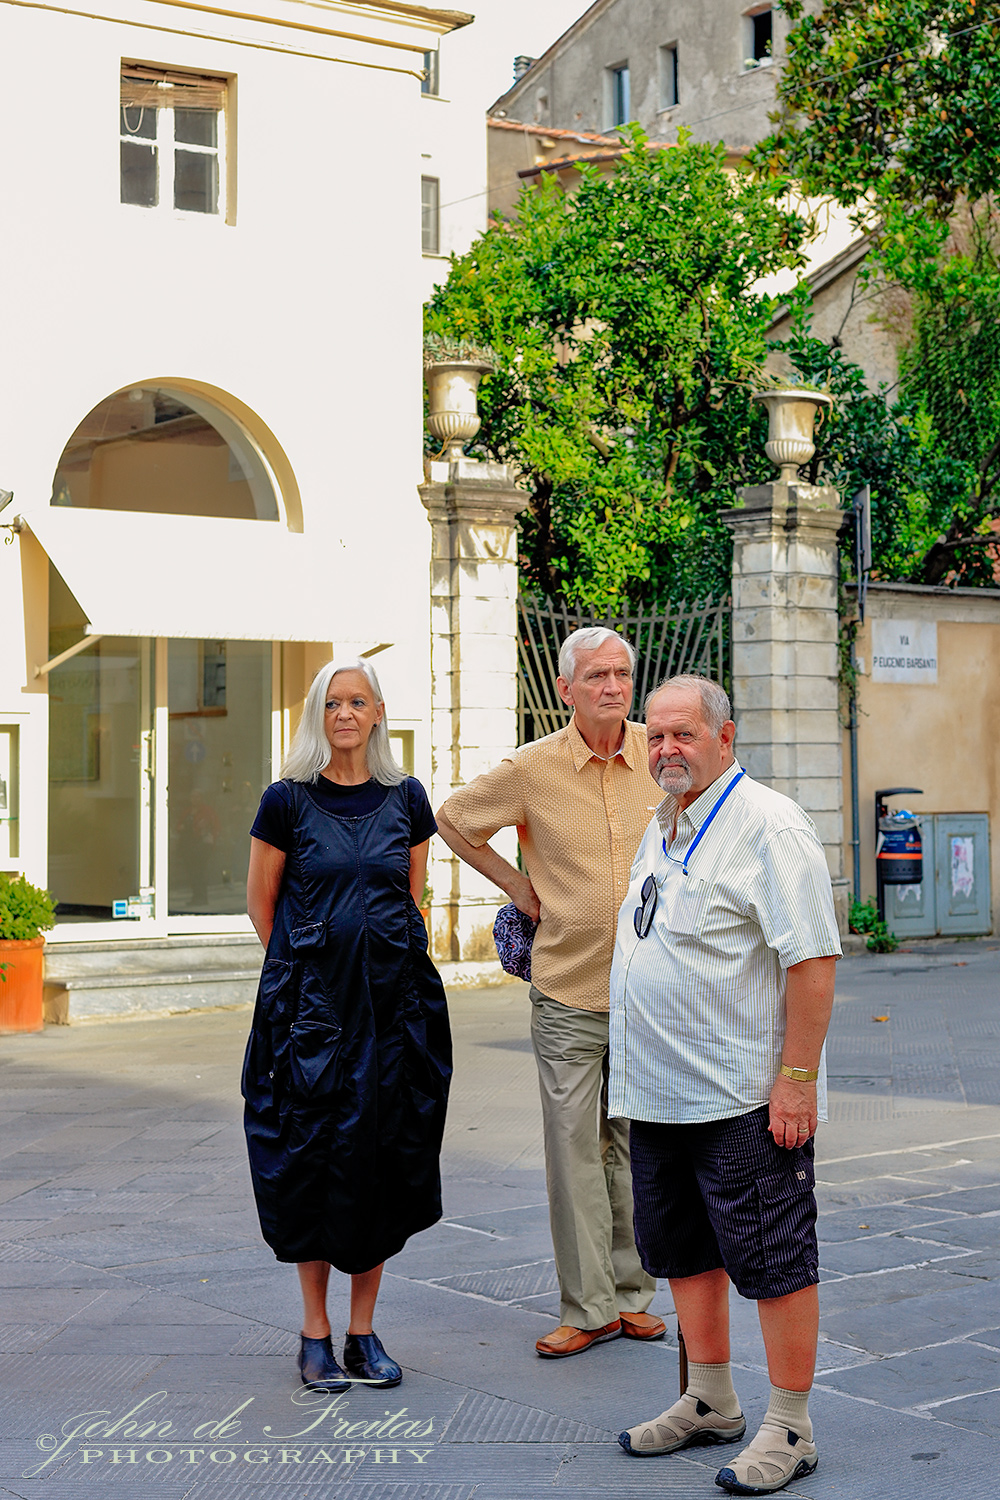 2017 - Linda, Paul & Ken - Pietrasanta, Tuscany - Italy